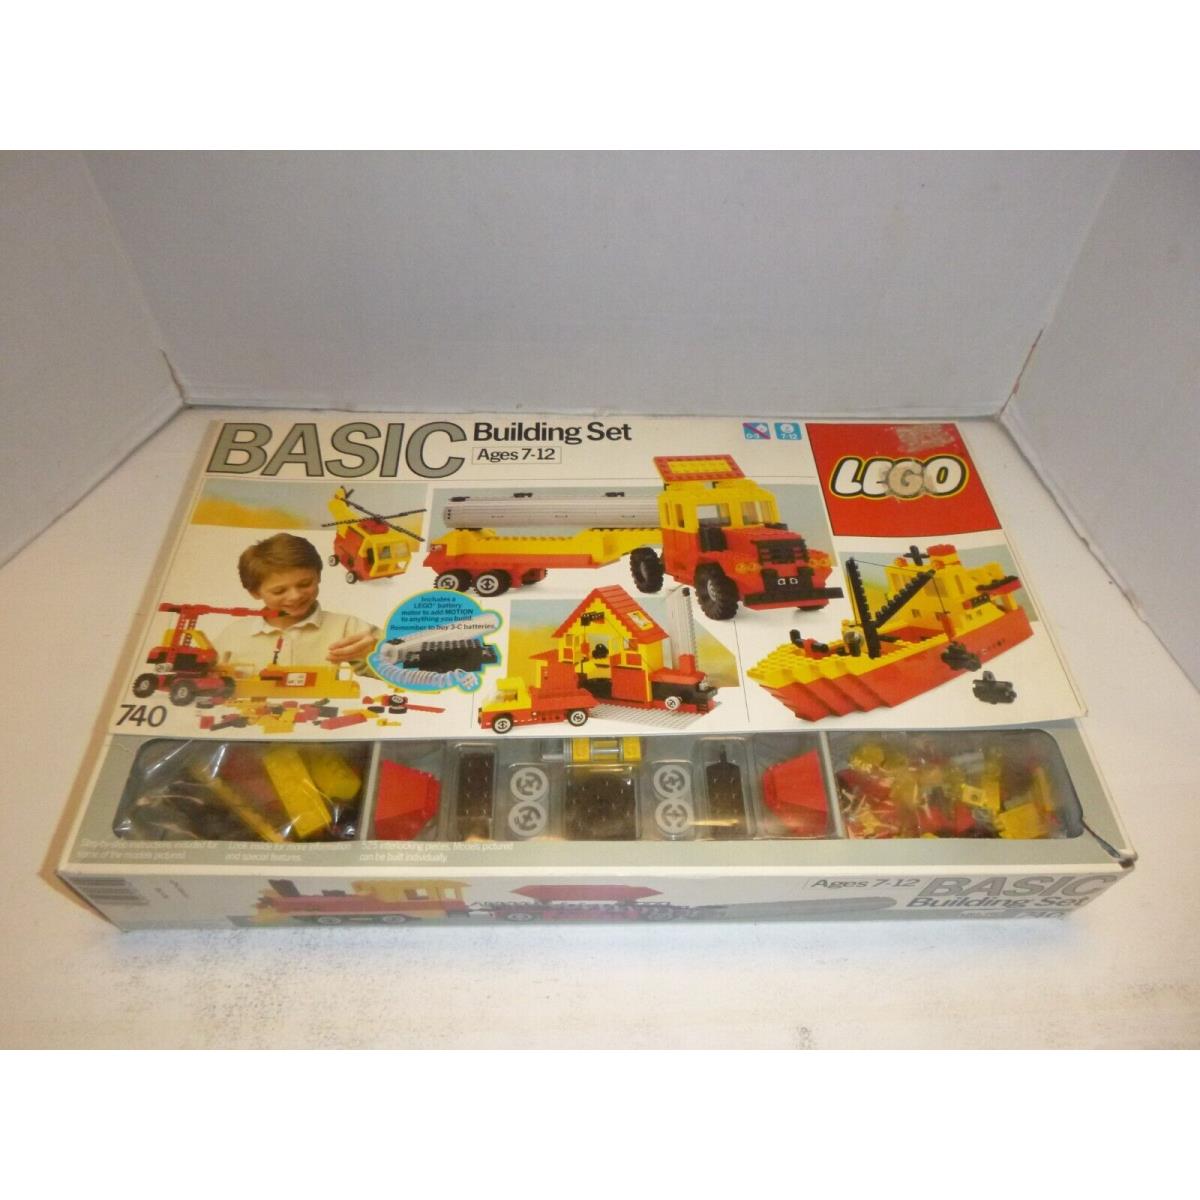 Basic Building Set 740 Mib Lego 1985